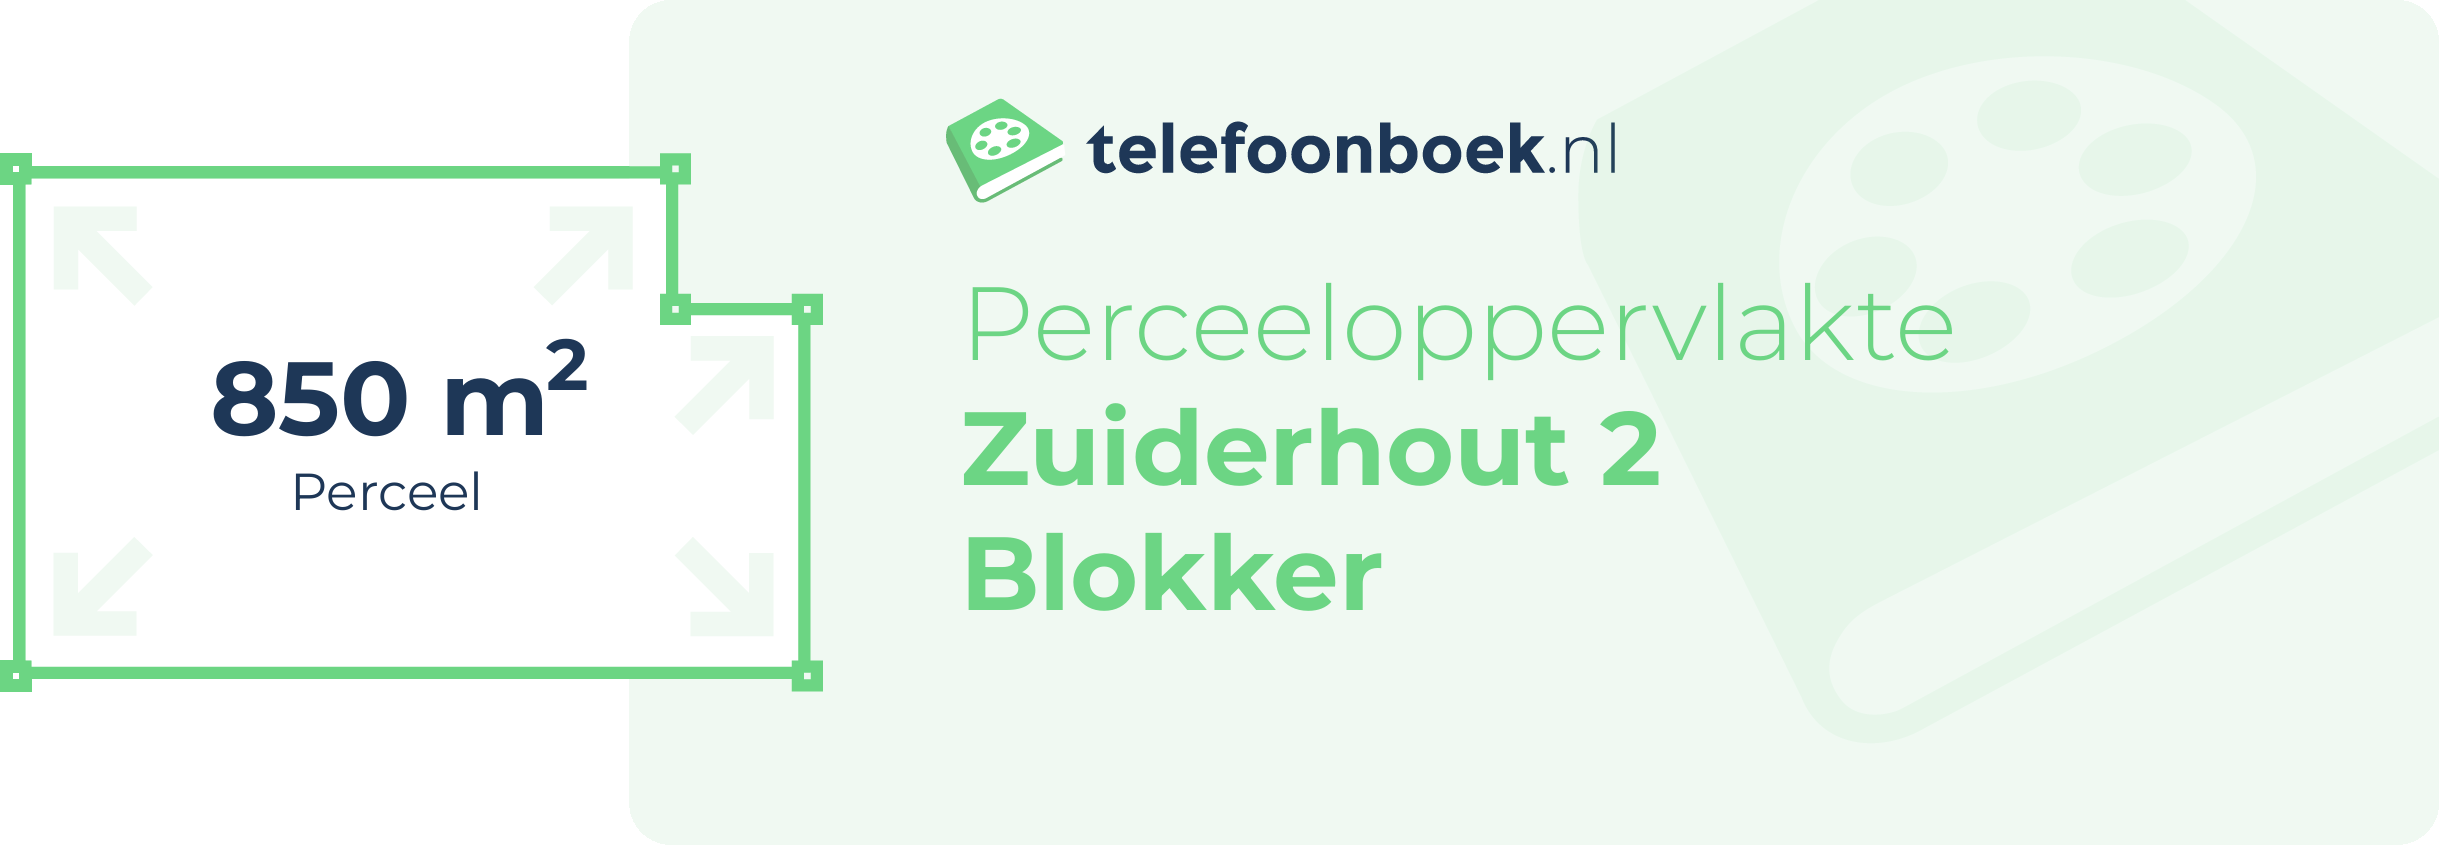 Perceeloppervlakte Zuiderhout 2 Blokker